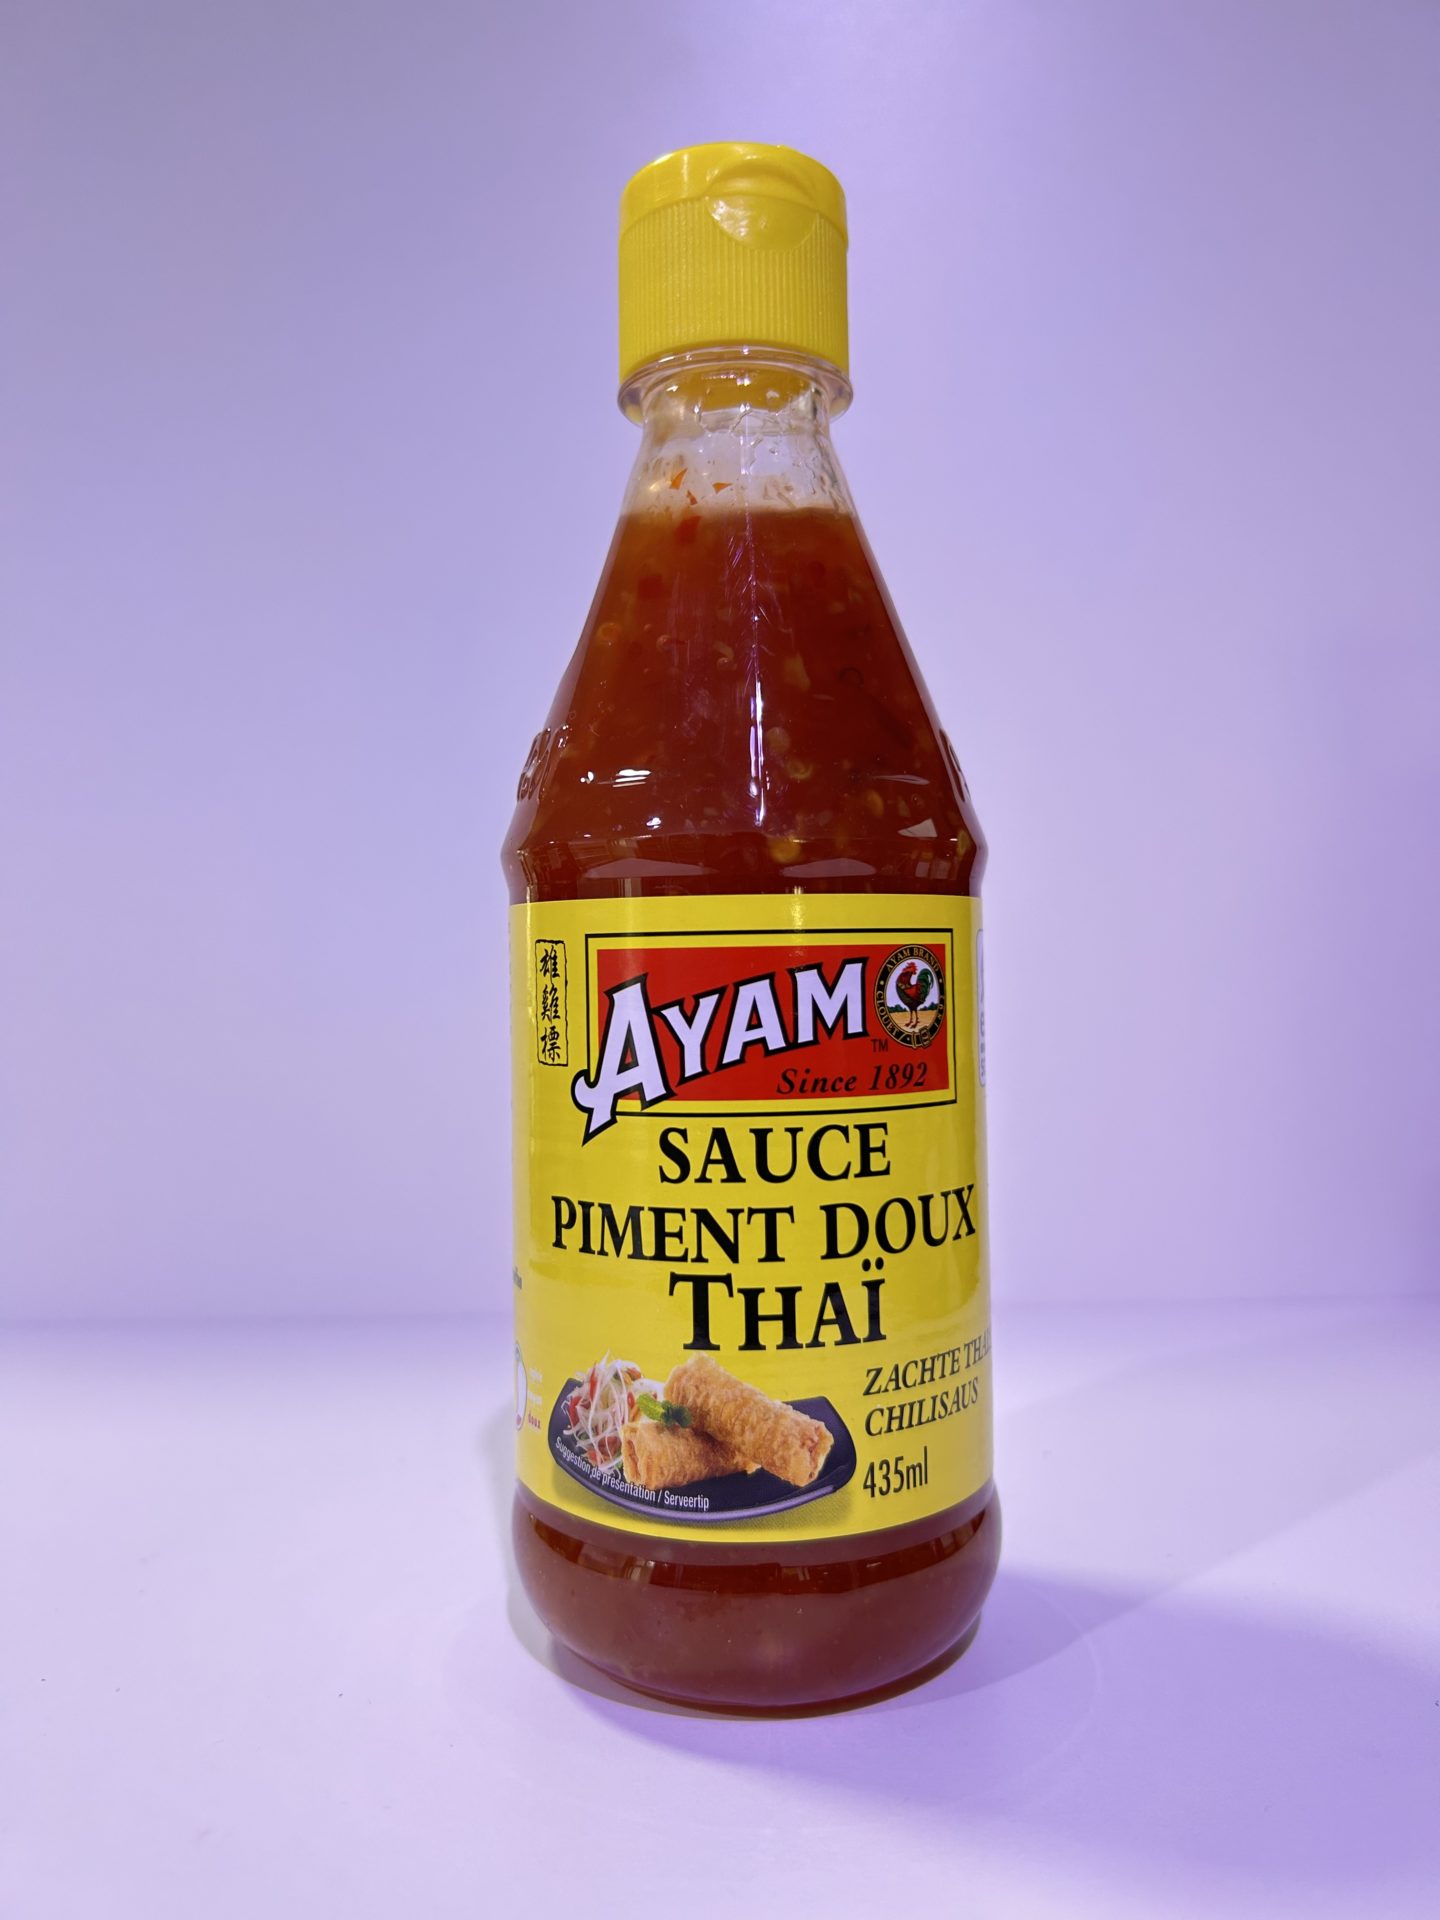 Sauce piment doux thaï 435ml